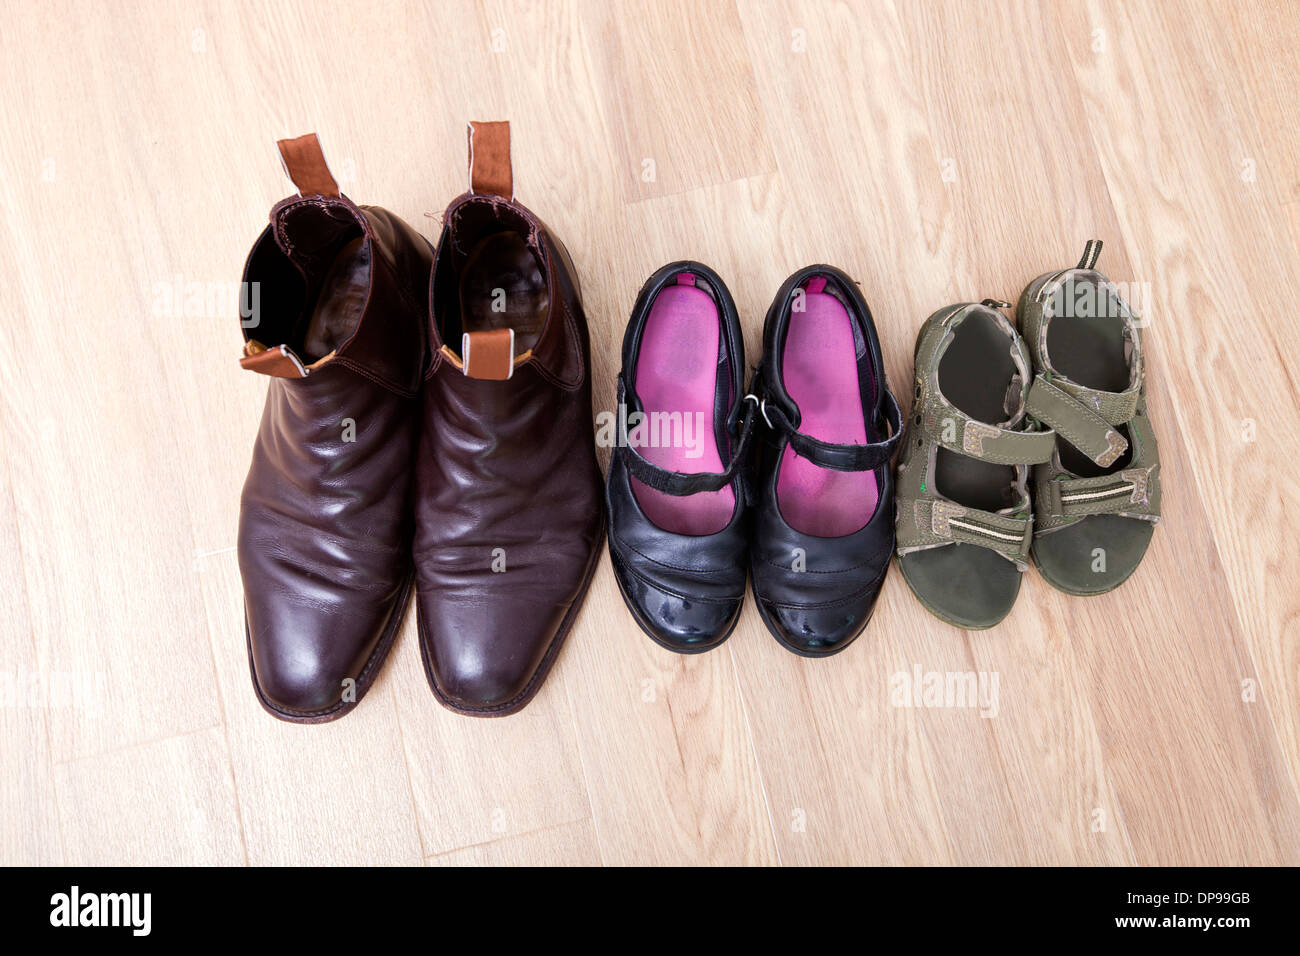 Erhöhte Ansicht der Familie Schuhe in einer Reihe auf Hartholz-Fußboden aufgestellt Stockfoto